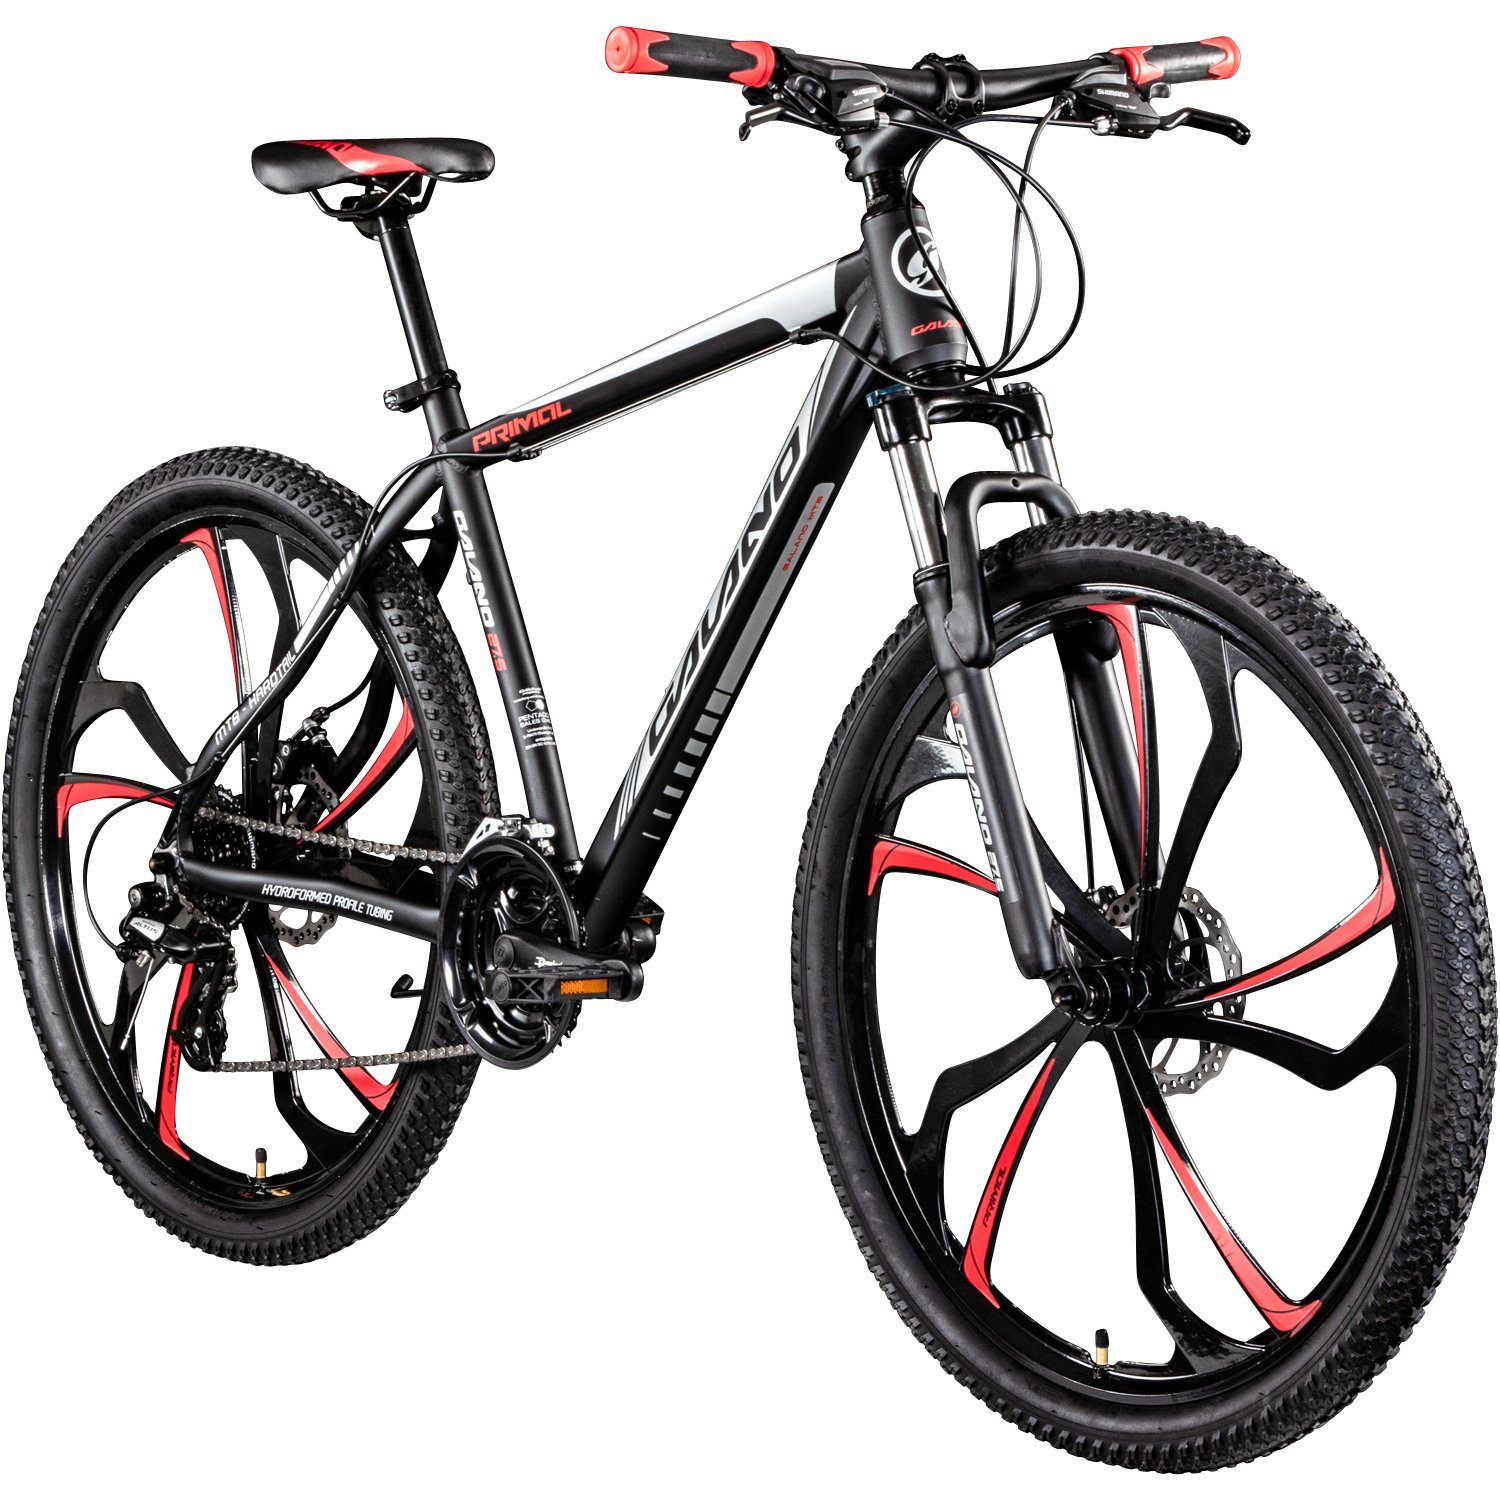 Galano Mountainbike Primal, 24 Gang, Kettenschaltung, Mountainbike Jugendliche und Erwachsene 165-185cm MTB Hardtail Fahrrad schwarz/rot